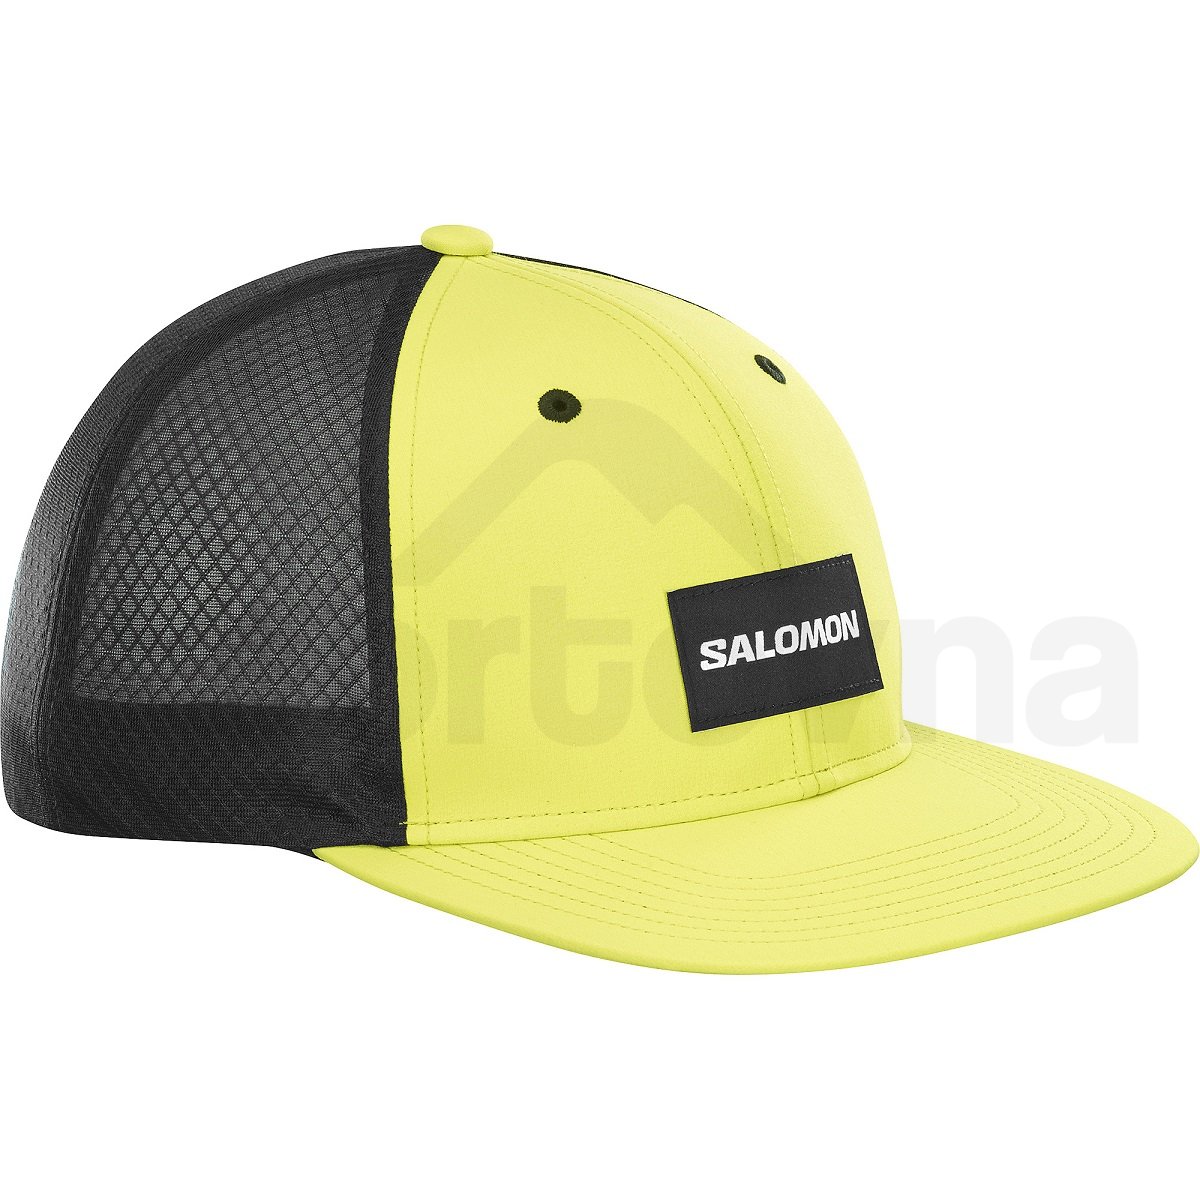 Kšiltovka Salomon Trucker Flat Cap - žlutá/černá